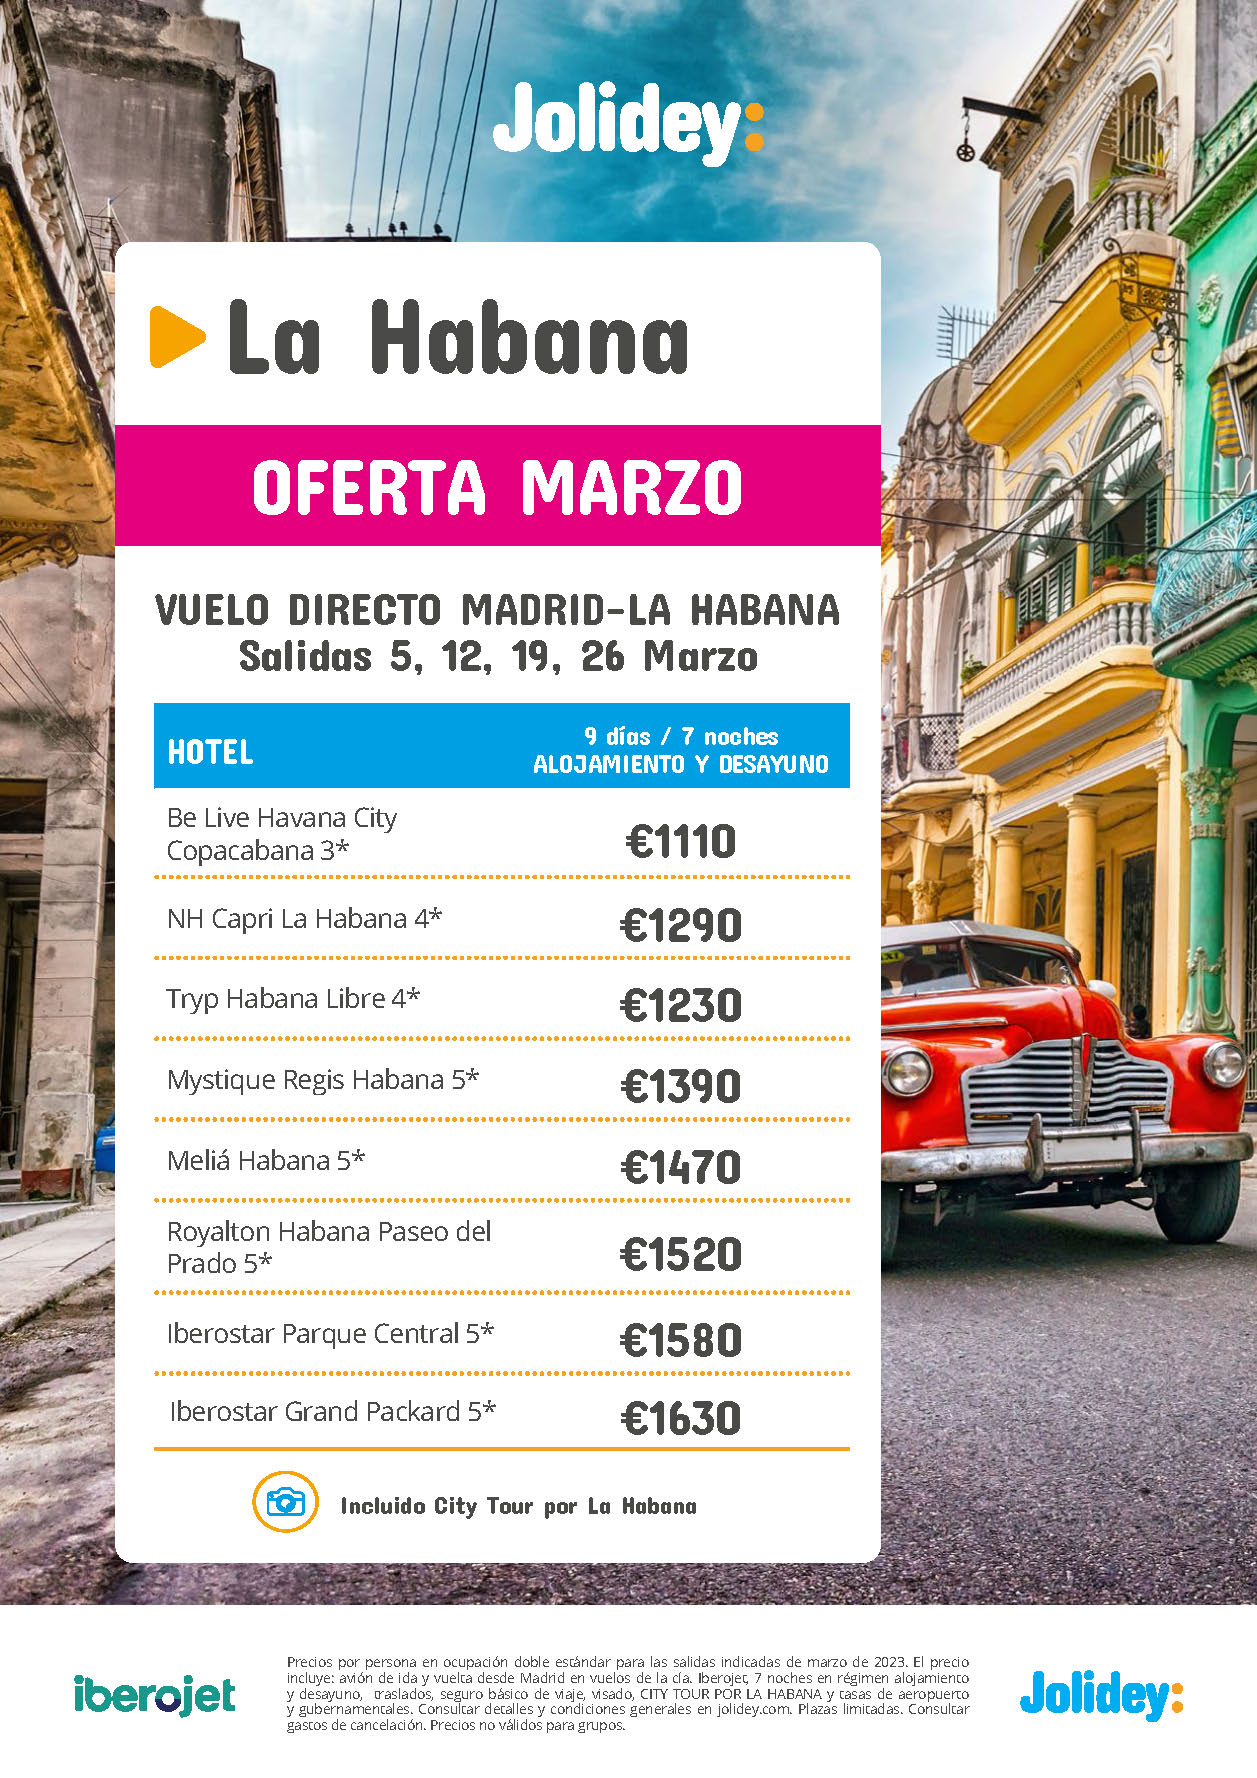 Oferta Jolidey Marzo 2023 Estancia en La Habana AD Cuba 9 dias salida en vuelo directo desde Madrid